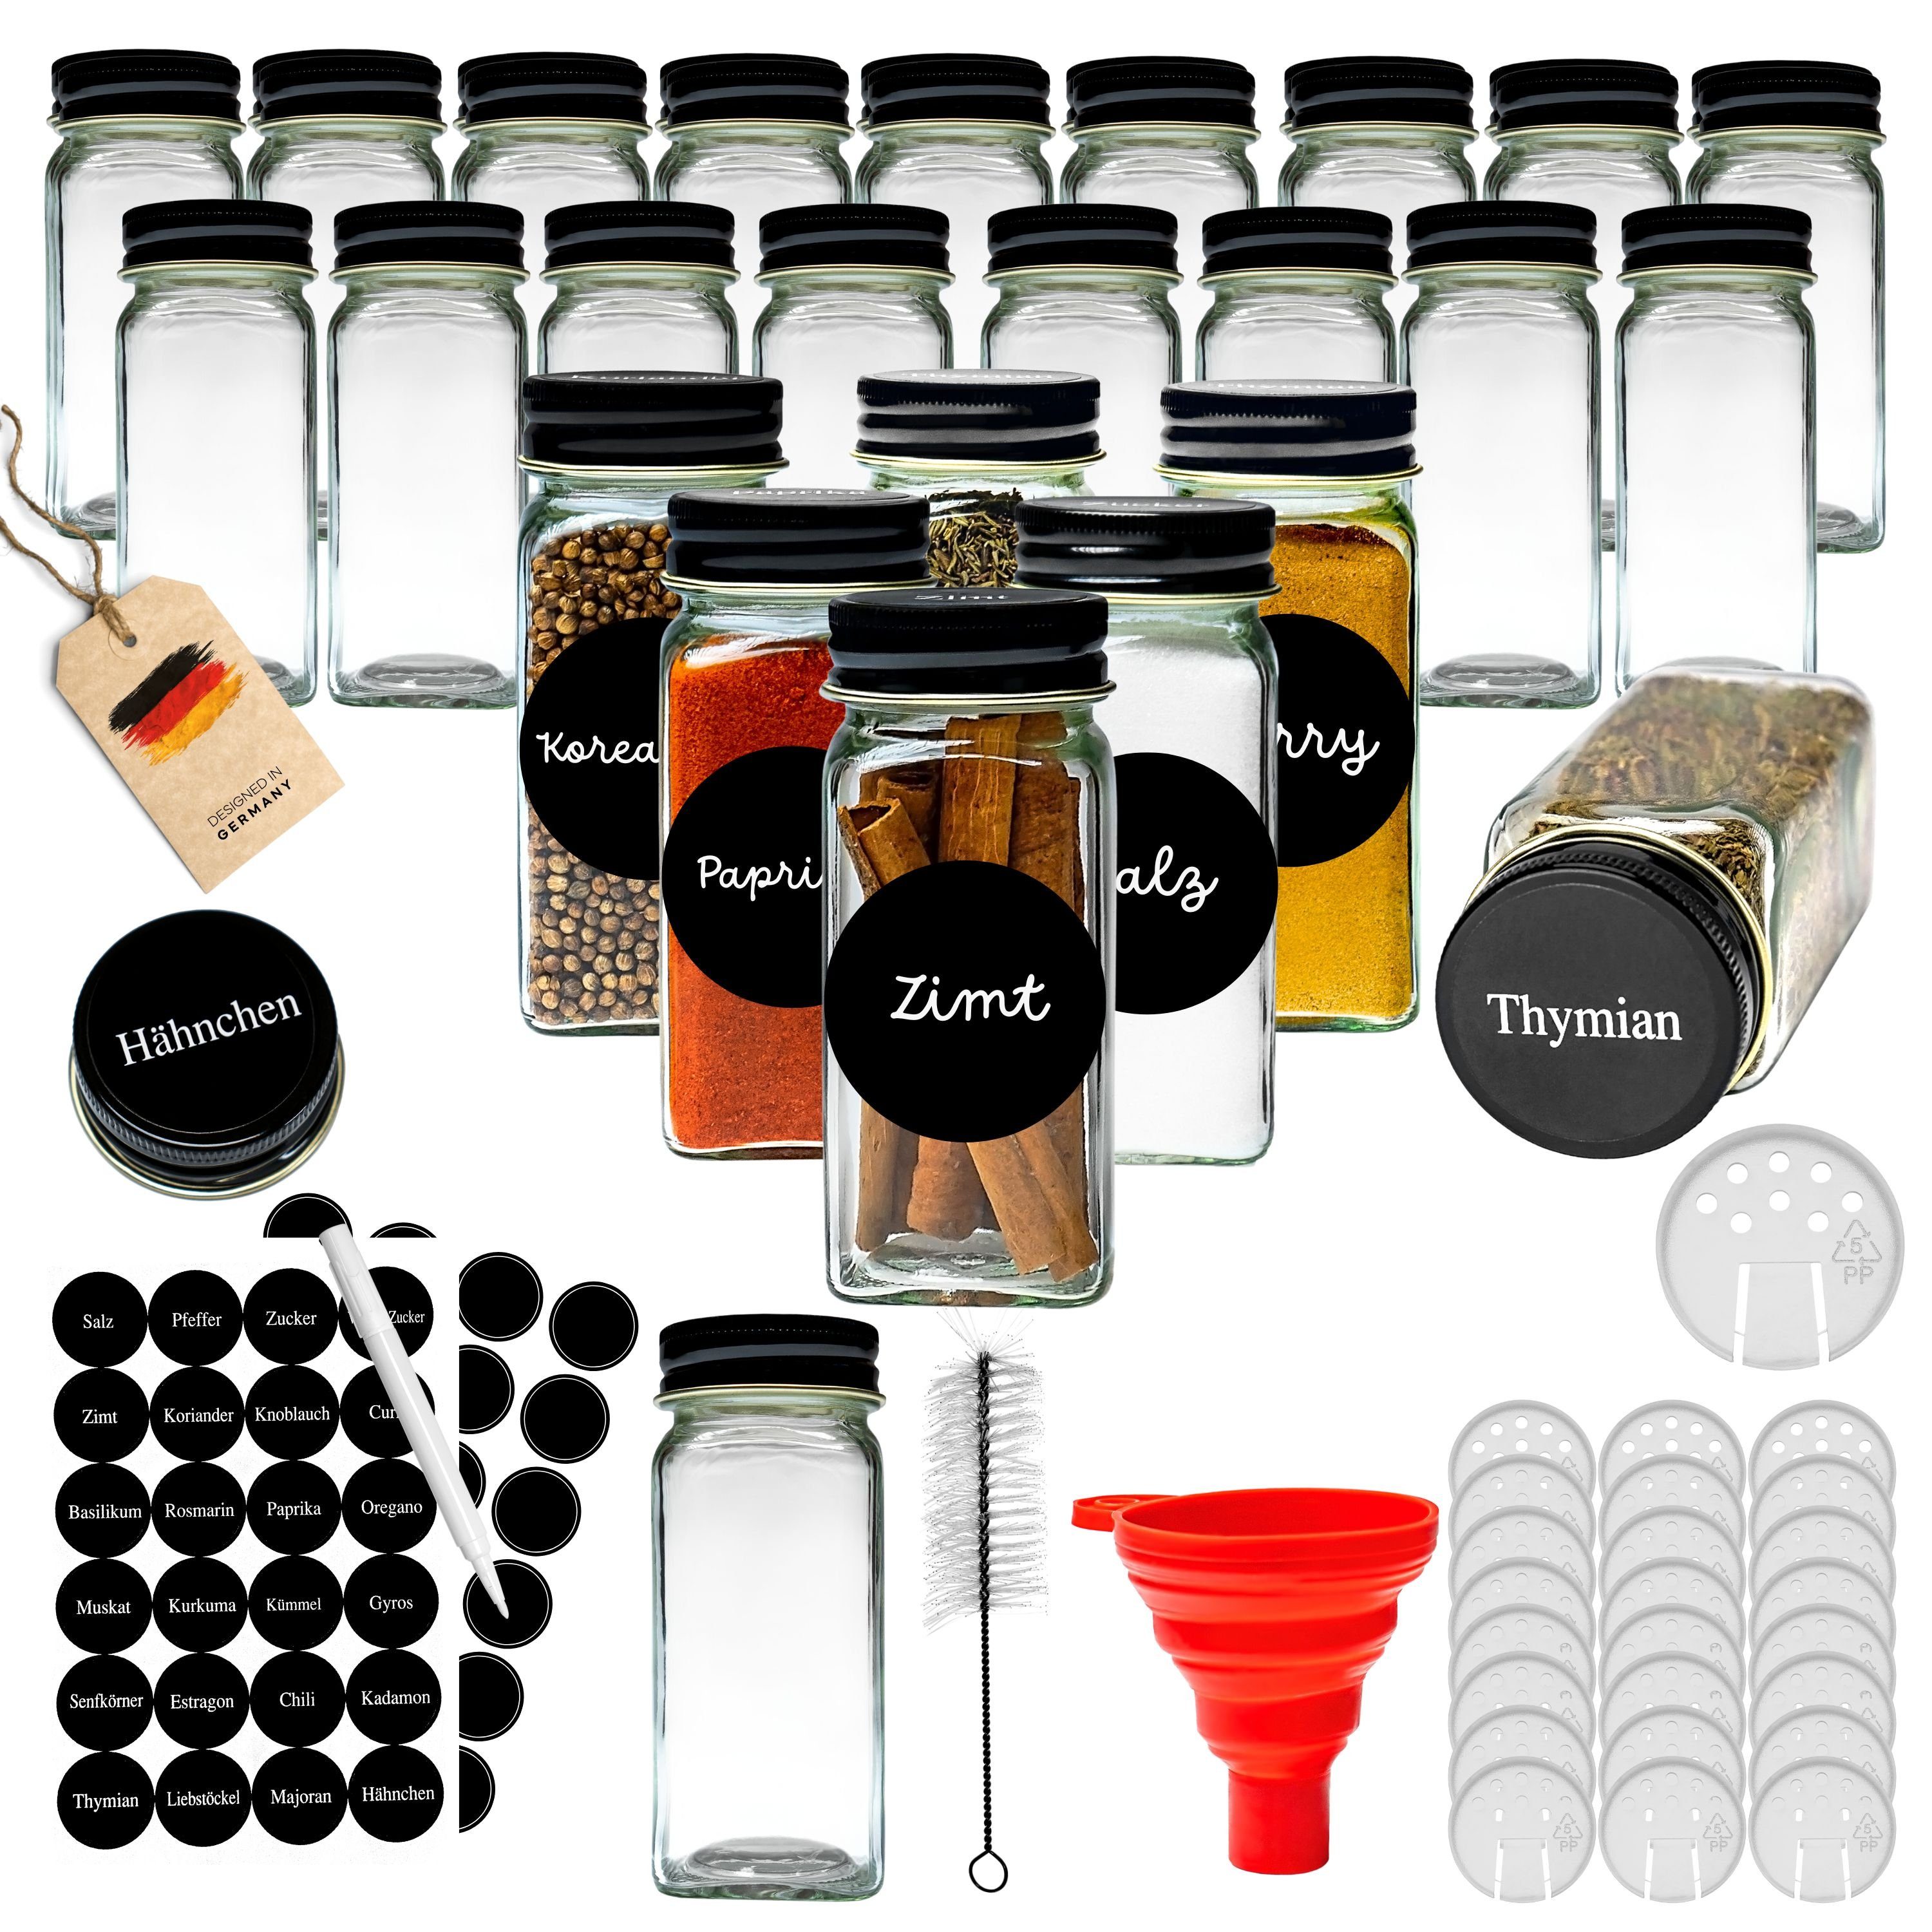 Coradoma Gewürzbehälter Gewürzgläser Set Eckig inkl. Etiketten - Glasbehälter Банки для хранения, Glas, (24-tlg), mit Reinigungsbürste, Trichter zum Befüllen, Gewürzetiketten